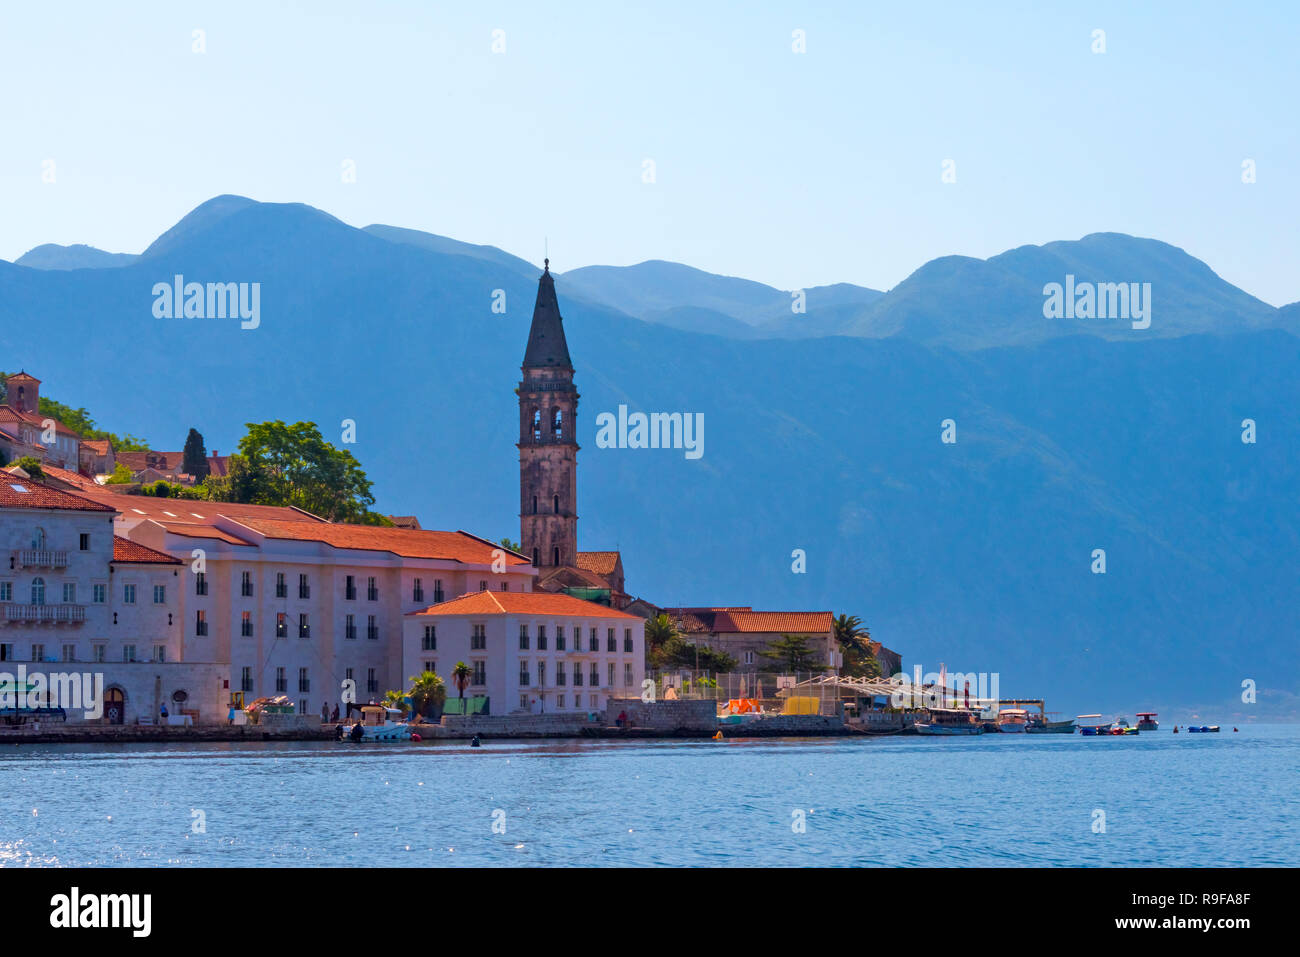 La torre de la iglesia y casas en la costa del Adriático, Perast, Montenegro Foto de stock